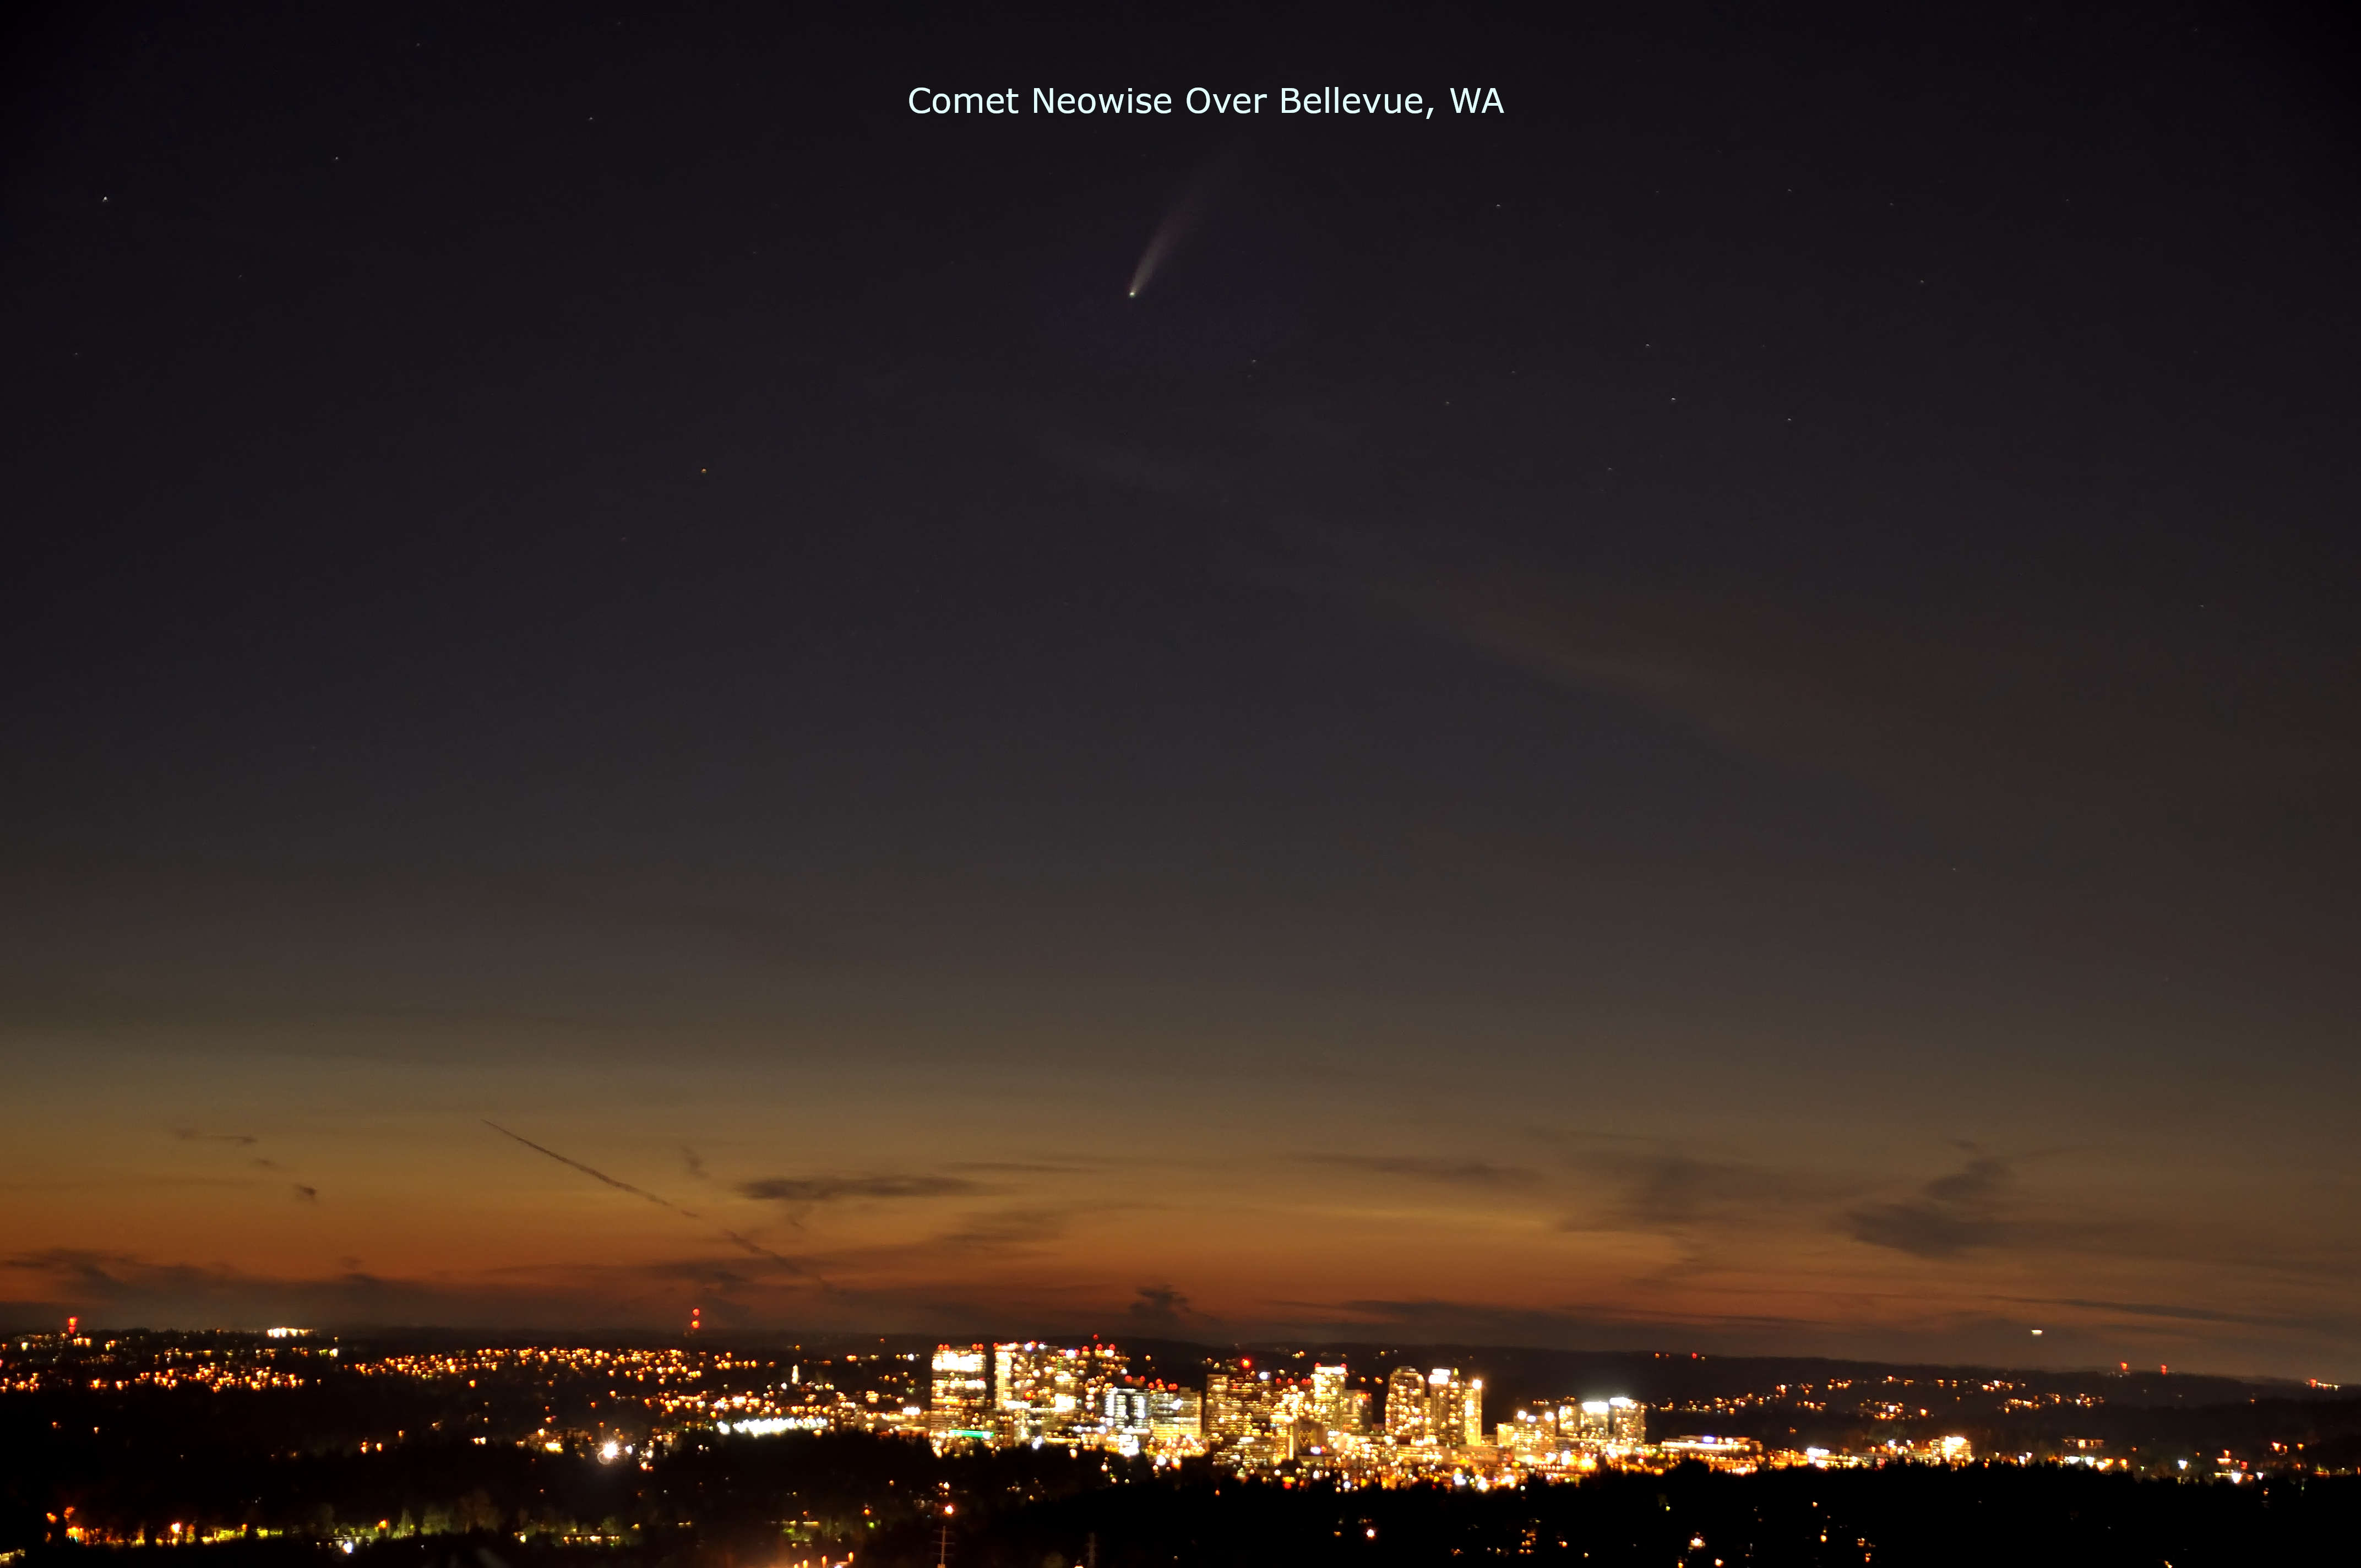 Comet Neowise over Bellevue_DSC_0055_00001.jpg